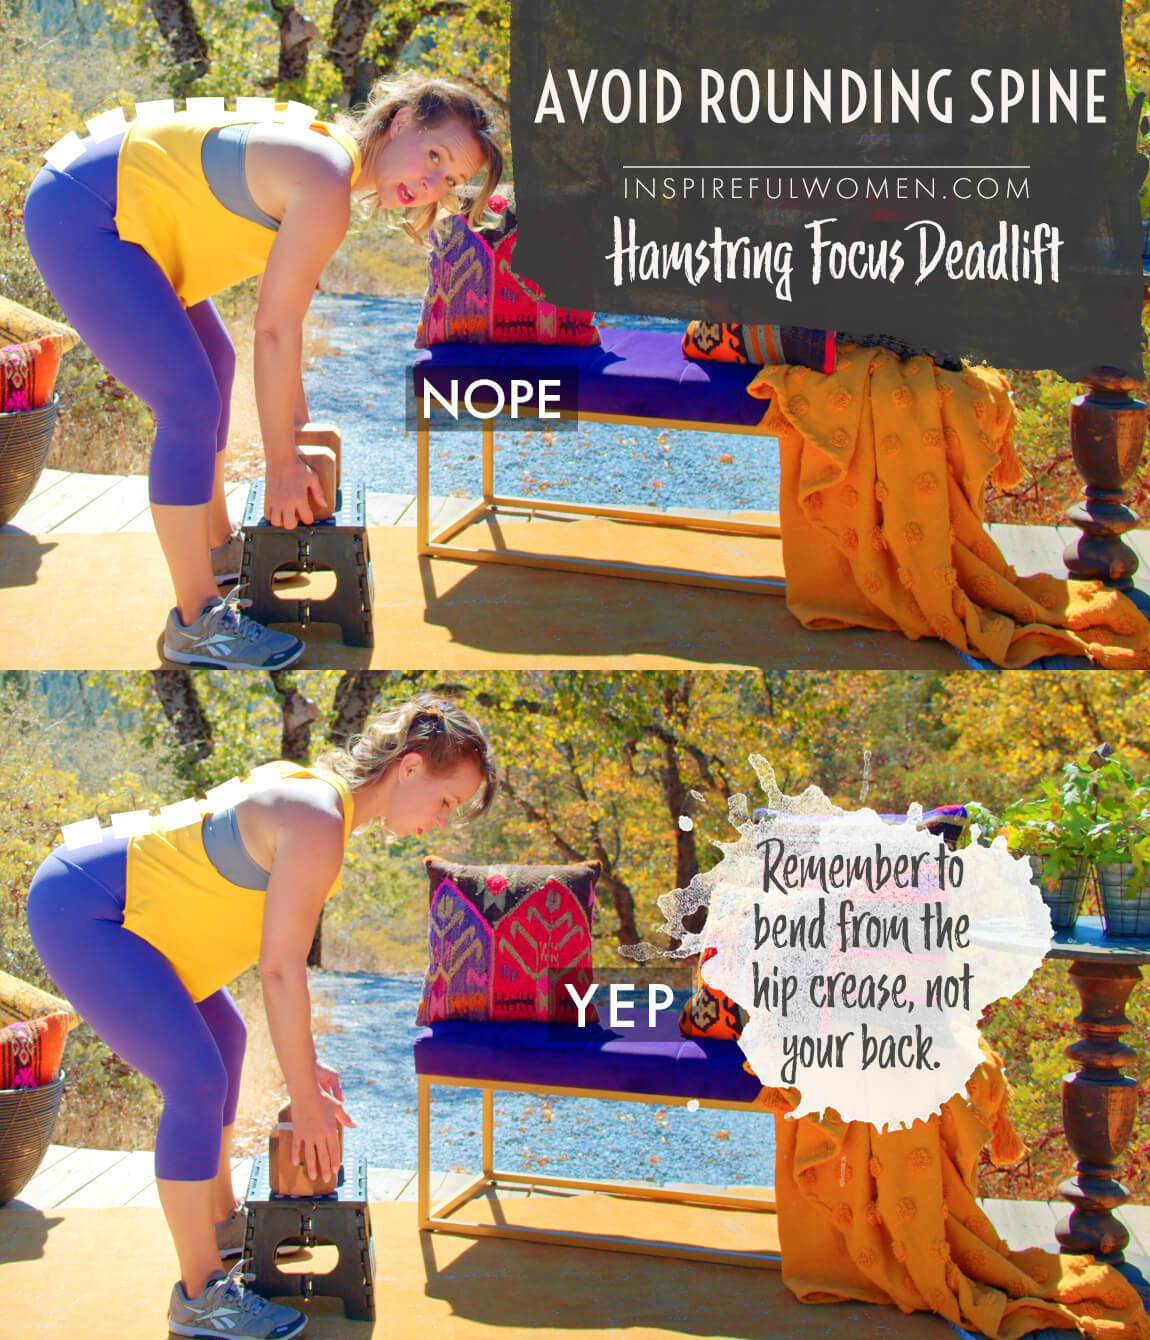 avoid-rounding-spine-hamstring-focus-deadlift-posterior-chain-exercise-proper-form